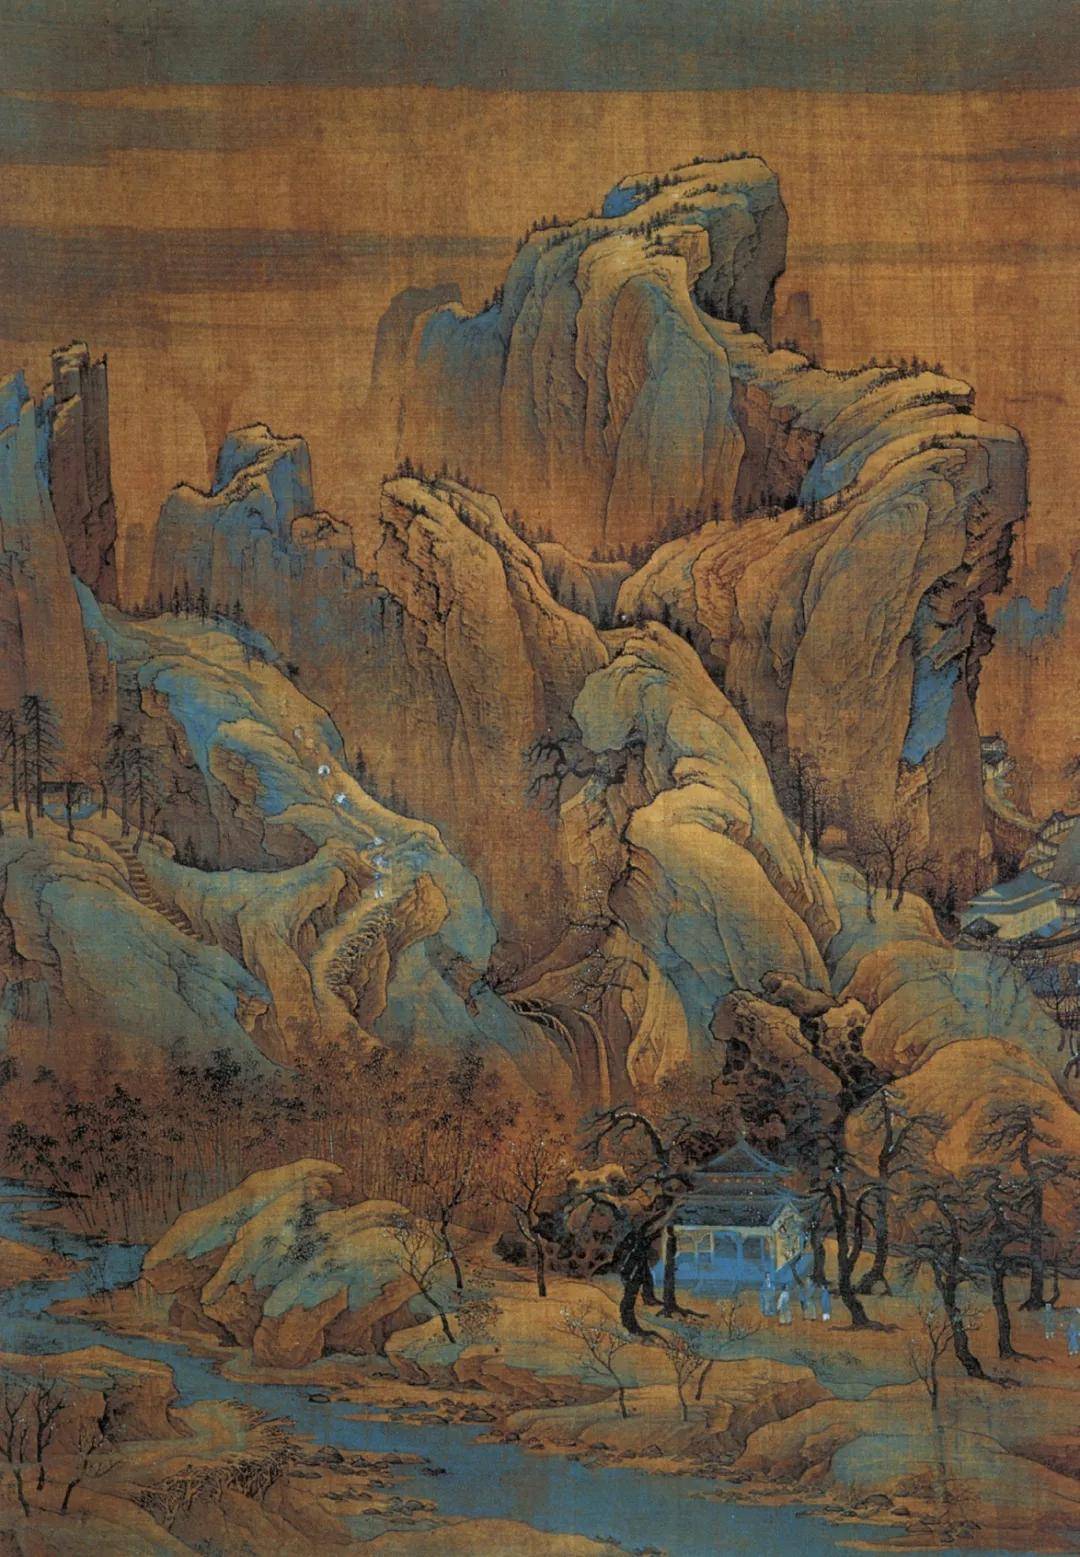 中国古代名画山水画作品,范宽溪山行旅图赏析-第13张图片